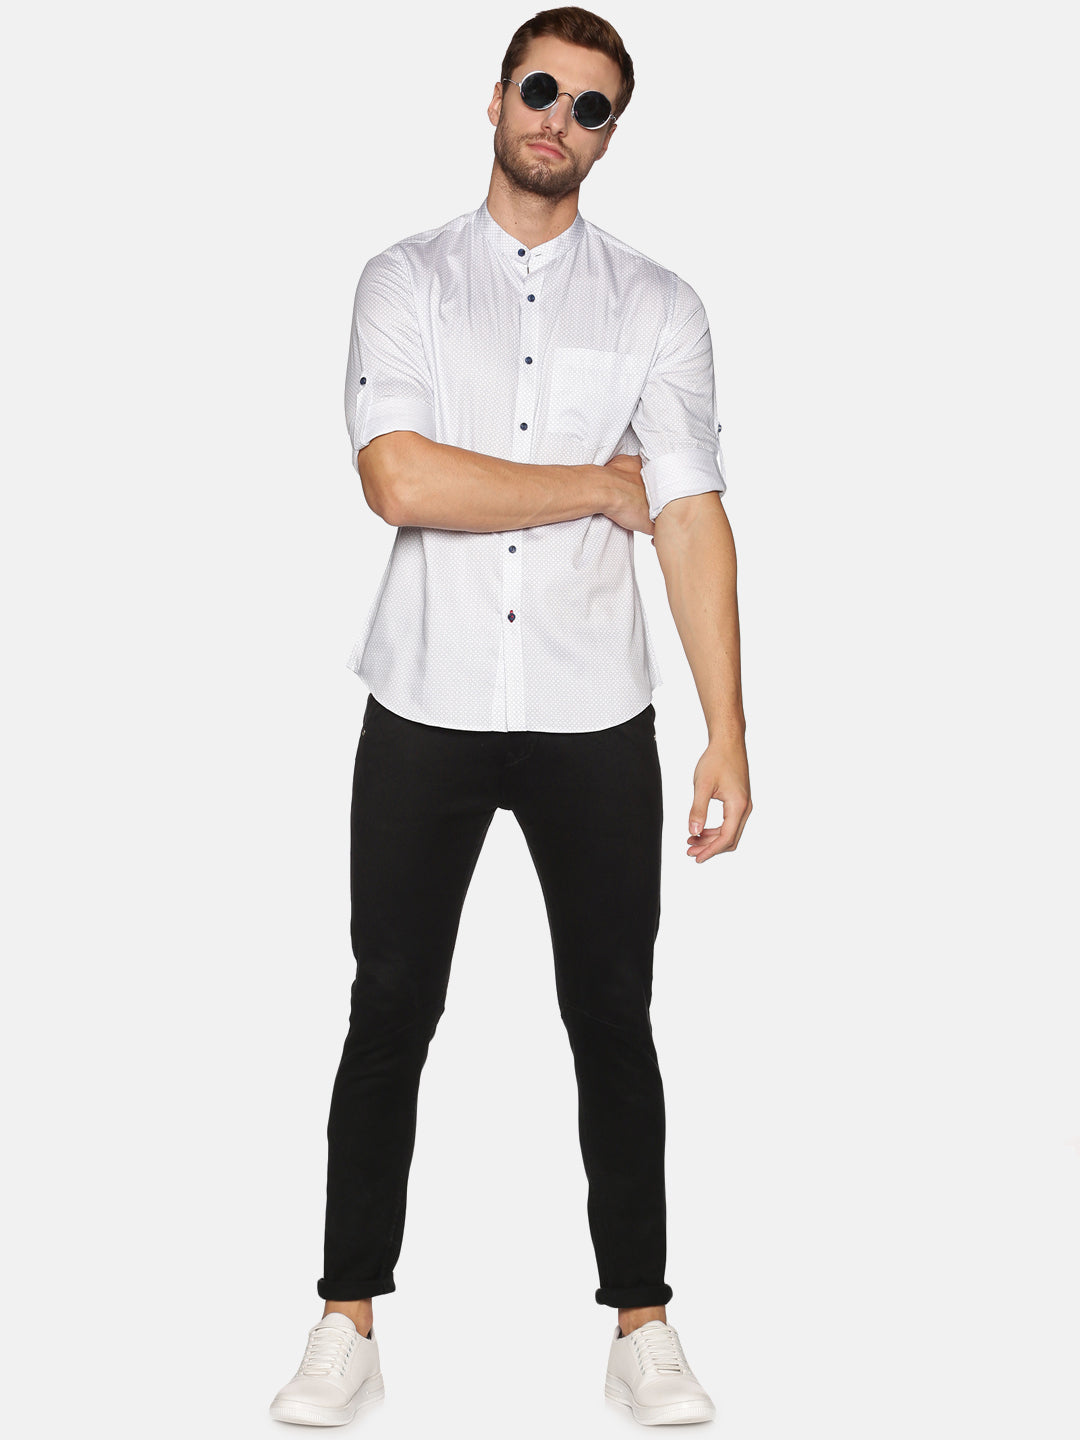 Don Vino Men's White Solid Full Sleeve Casual Shirt